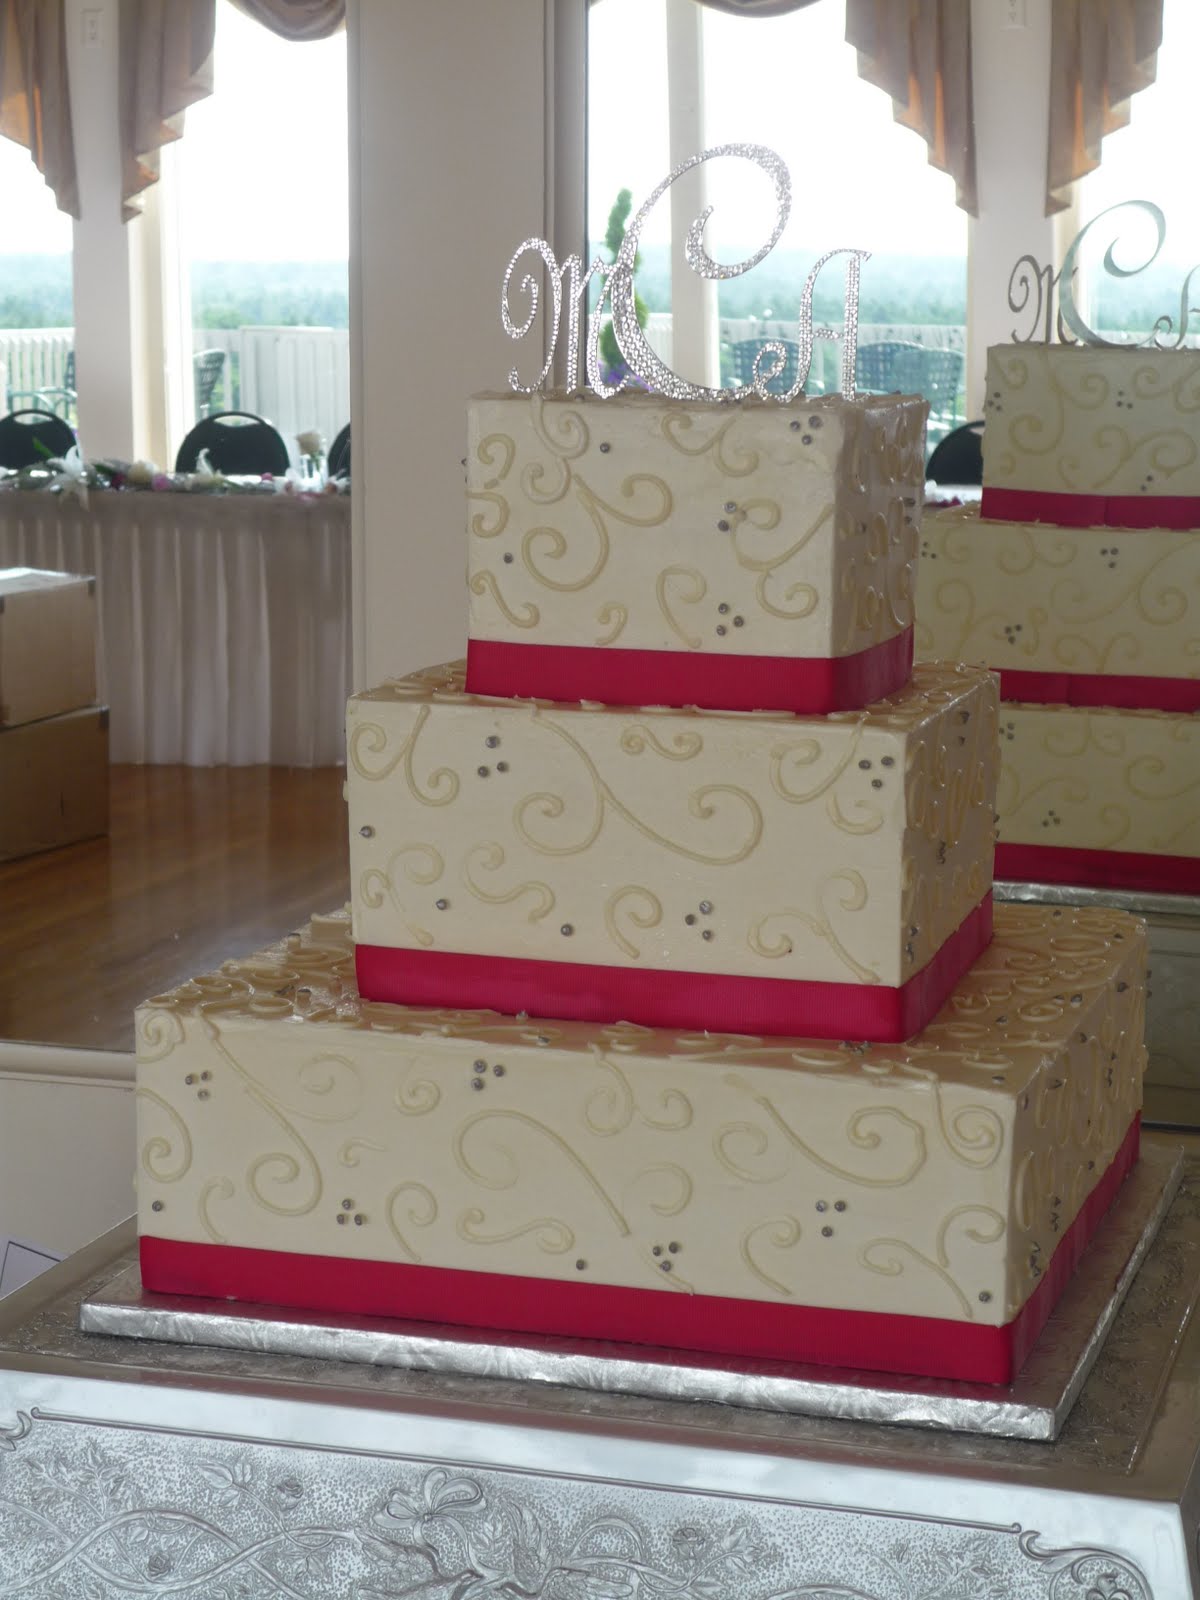 Pink Square Wedding Cake